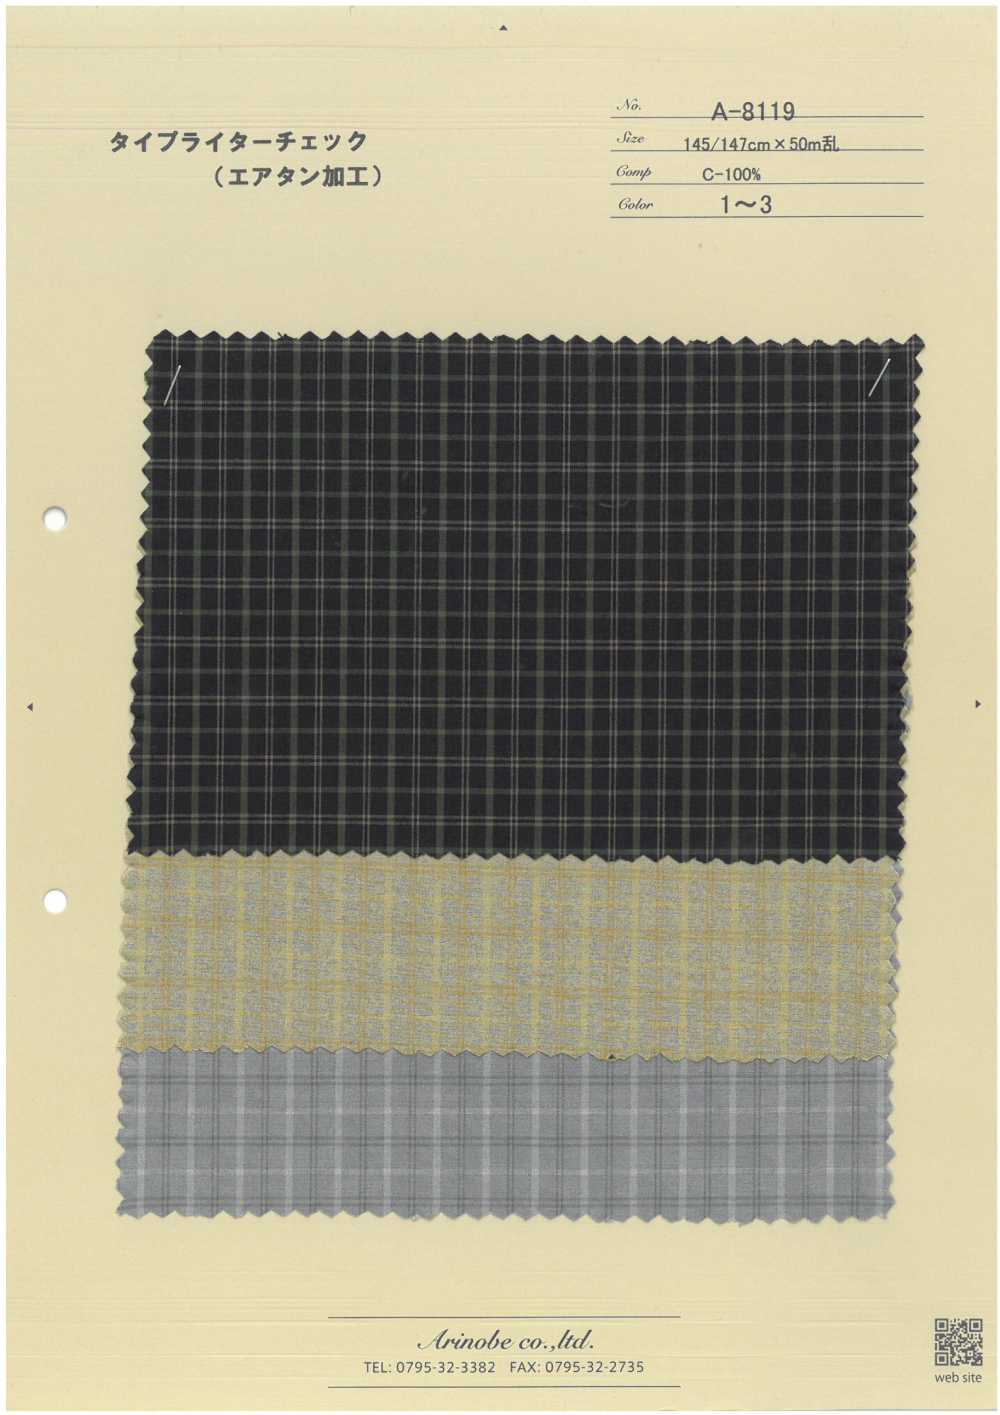 A-8119 Schreibmaschinentuch (Air Tan Processing)[Textilgewebe] ARINOBE CO., LTD.